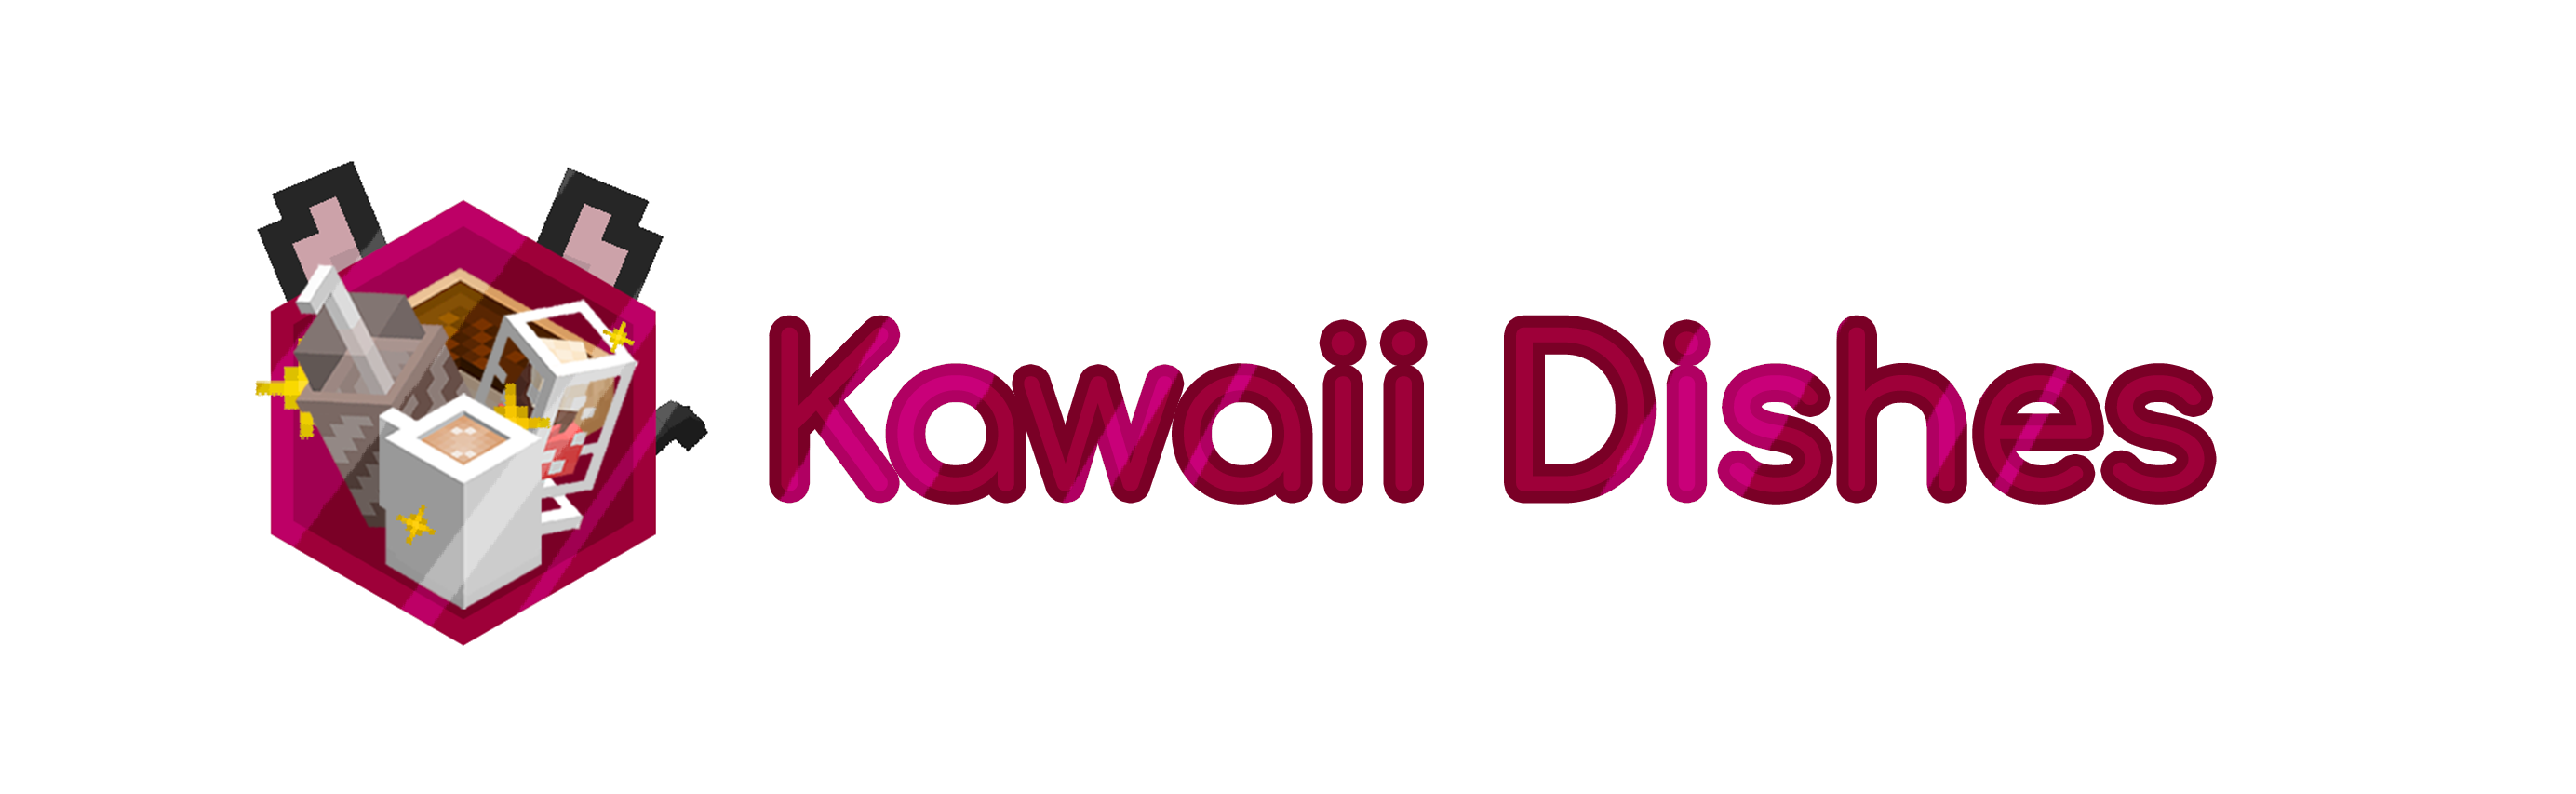 Kawaii Dishes Banner